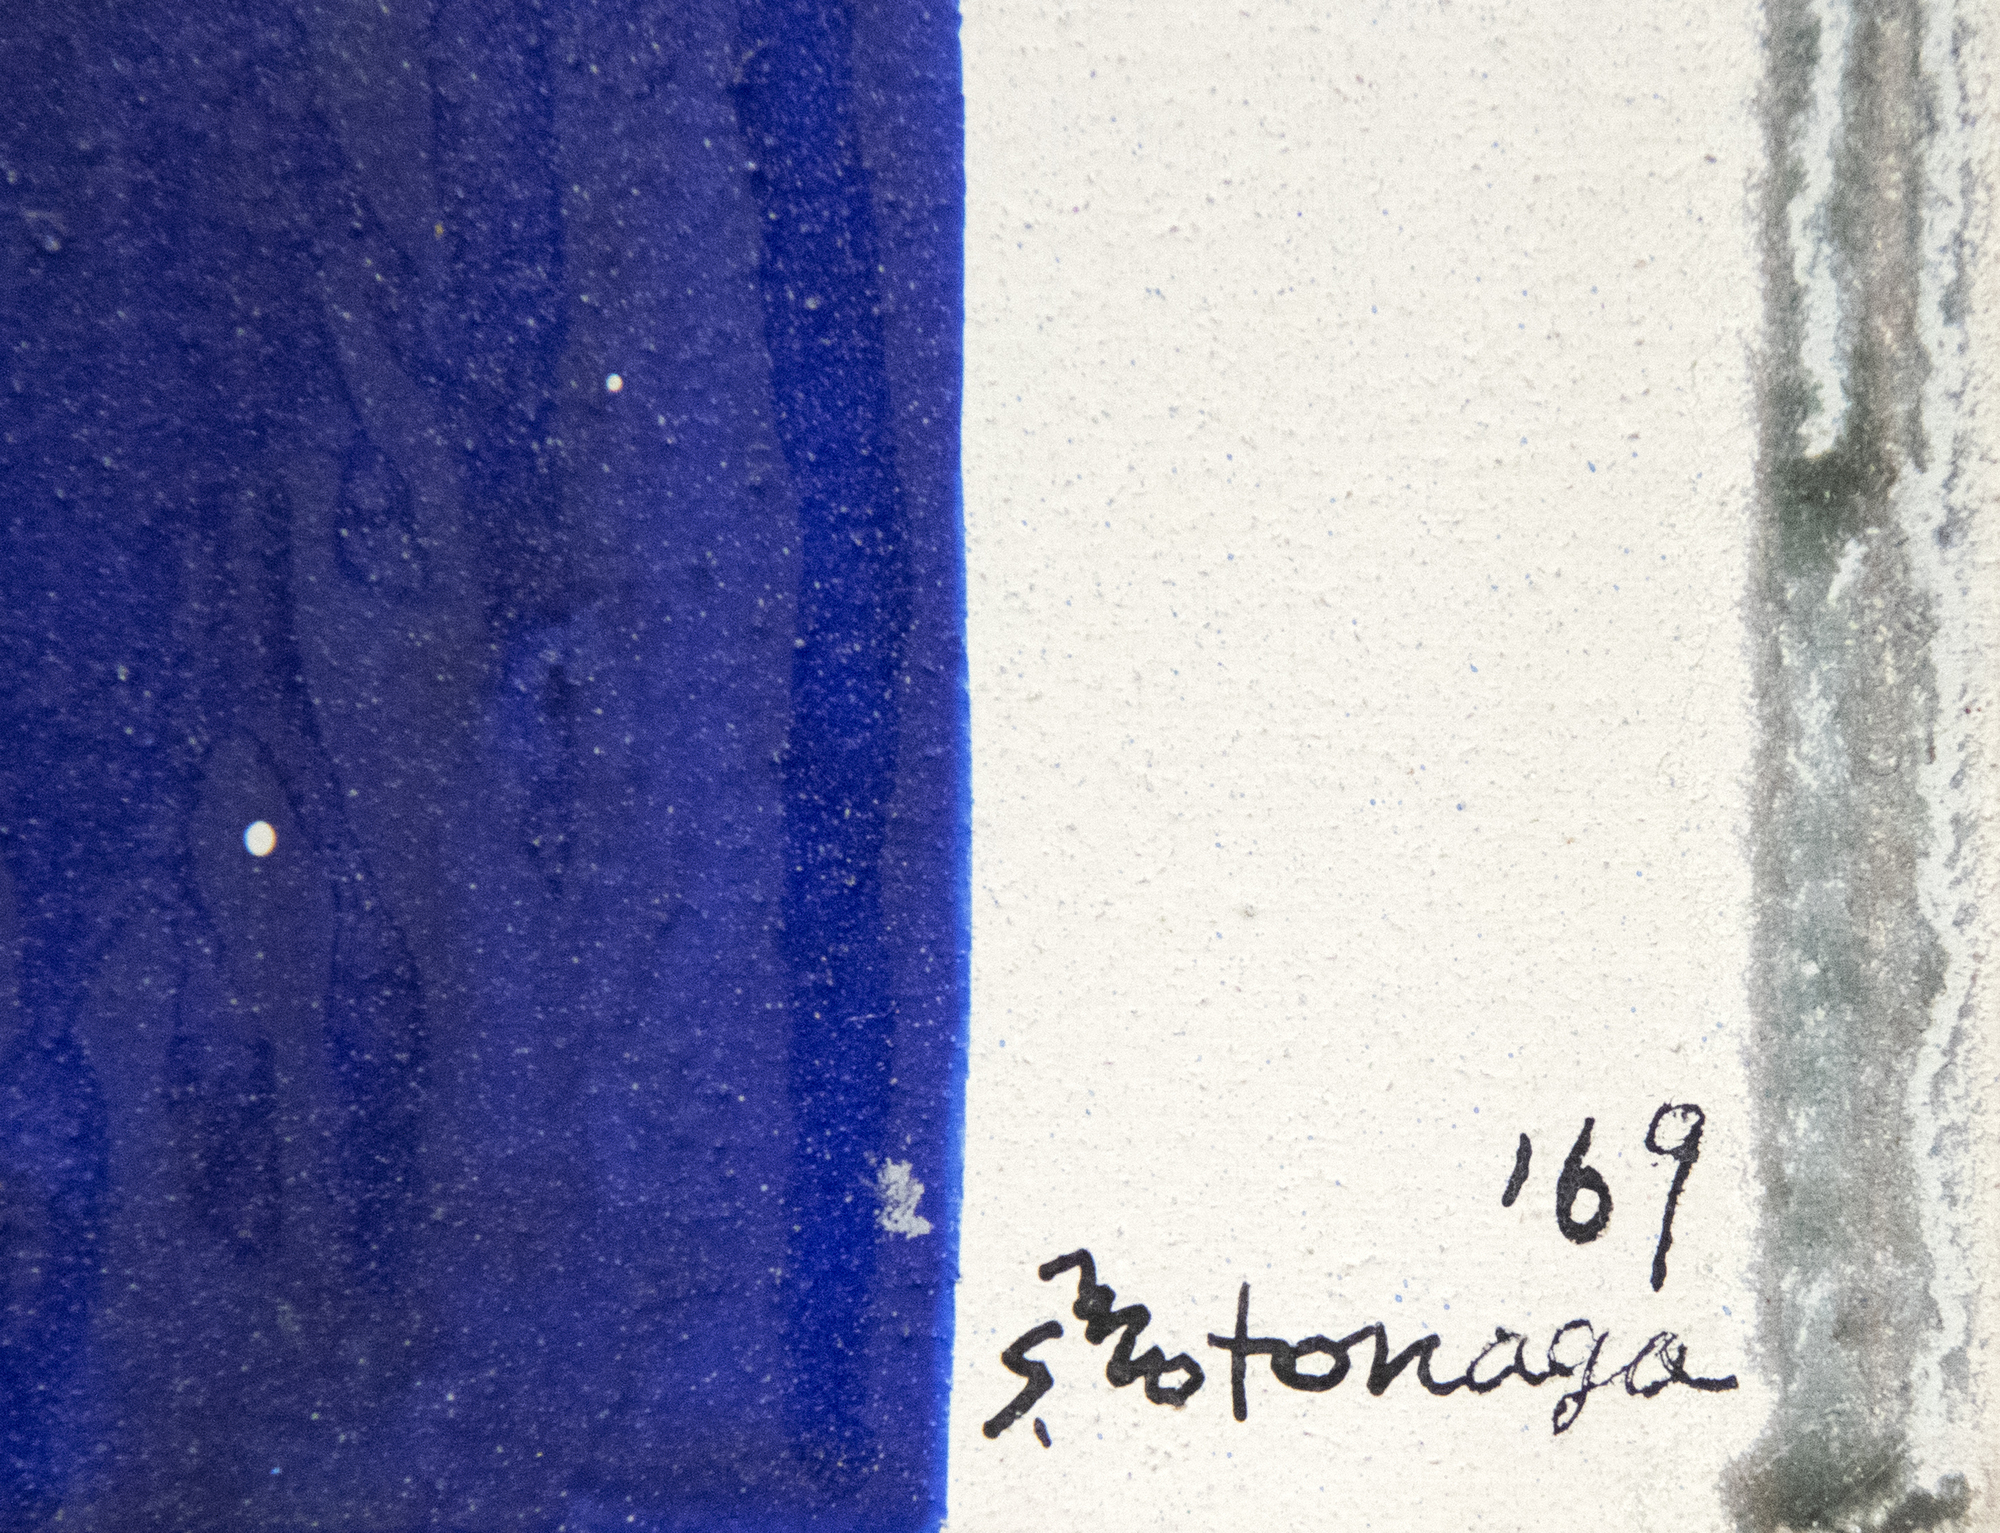 Als Mitglied der legendären Gutai Art Association, die zwischen 1954 und 1972 ihre Blütezeit erlebte, tauchte Sadamasa Motonaga auf, als der post-atomare surrealistische Existenzialismus an der Spitze der künstlerischen Entwicklung in Japan stand. Doch er wählte einen anderen Weg. Er wandte sich von den Zerstörungen des Krieges ab und schuf ein Werk, das frisch, jubelnd und spielerisch war. "Ohne Titel" aus dem Jahr 1969 ist in seinem klassischen Stil gehalten, der sich zeitgleich mit Morris Louis' sogenannten "Schleier"-Bildern entwickelte. Es ist eine brillant gelungene Darstellung von Motonagas avantgardistischer Interpretation des traditionellen japanischen Tarashikomi - der Technik, bei der die Leinwand in verschiedenen Winkeln gekippt wird, damit die Mischungen aus Harz und Emaille übereinander fließen können, bevor die Farbe vollständig getrocknet ist.